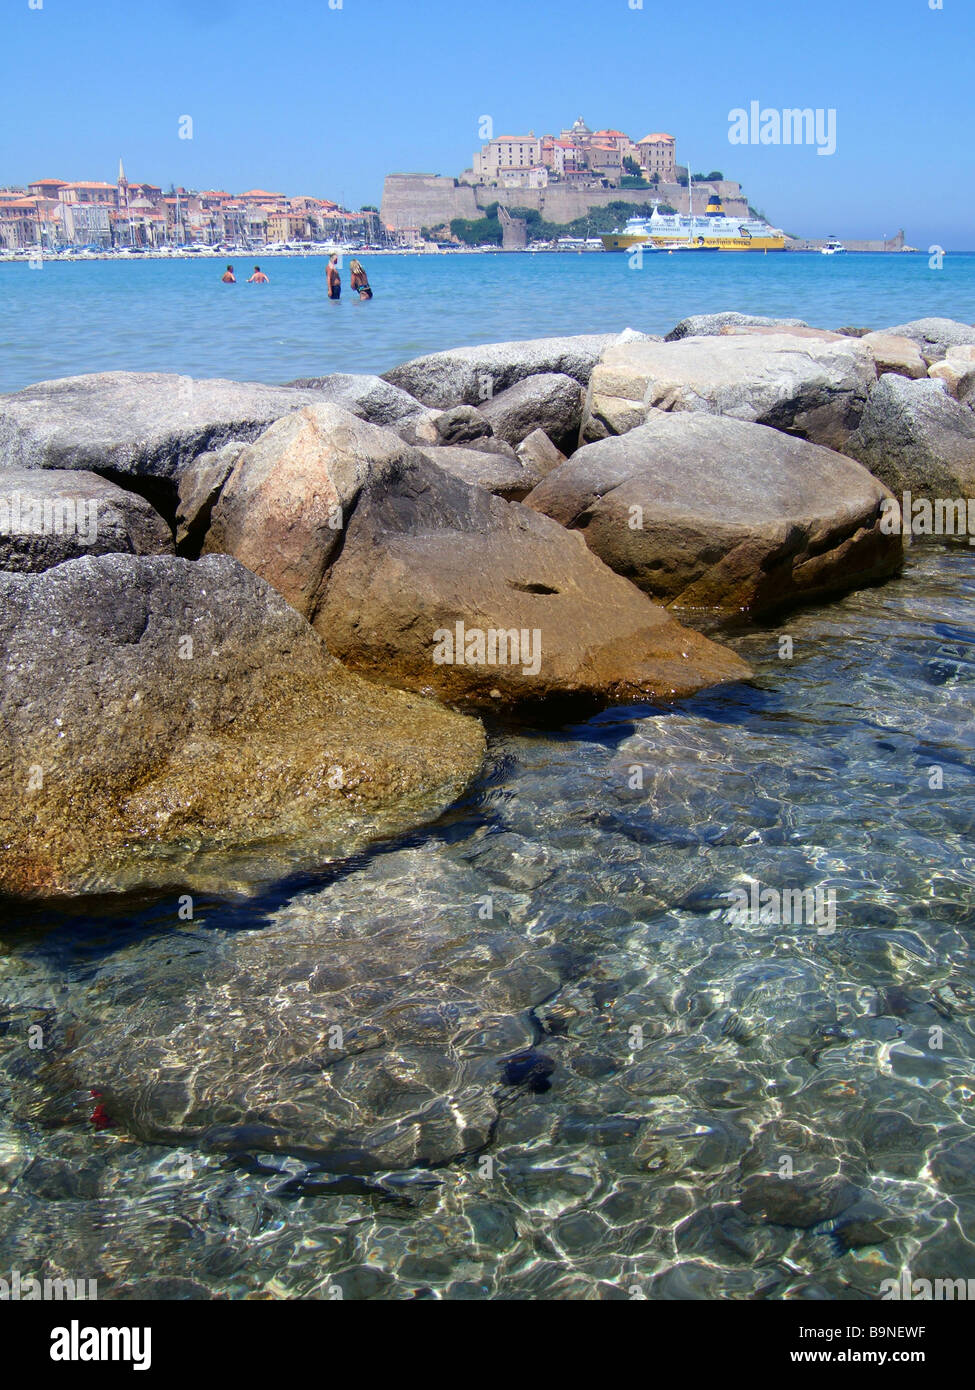 Das Meer, Meer und Felsen mit der Zitadelle von Calvi im Hintergrund Calvi, Korsika, Frankreich. Stockfoto